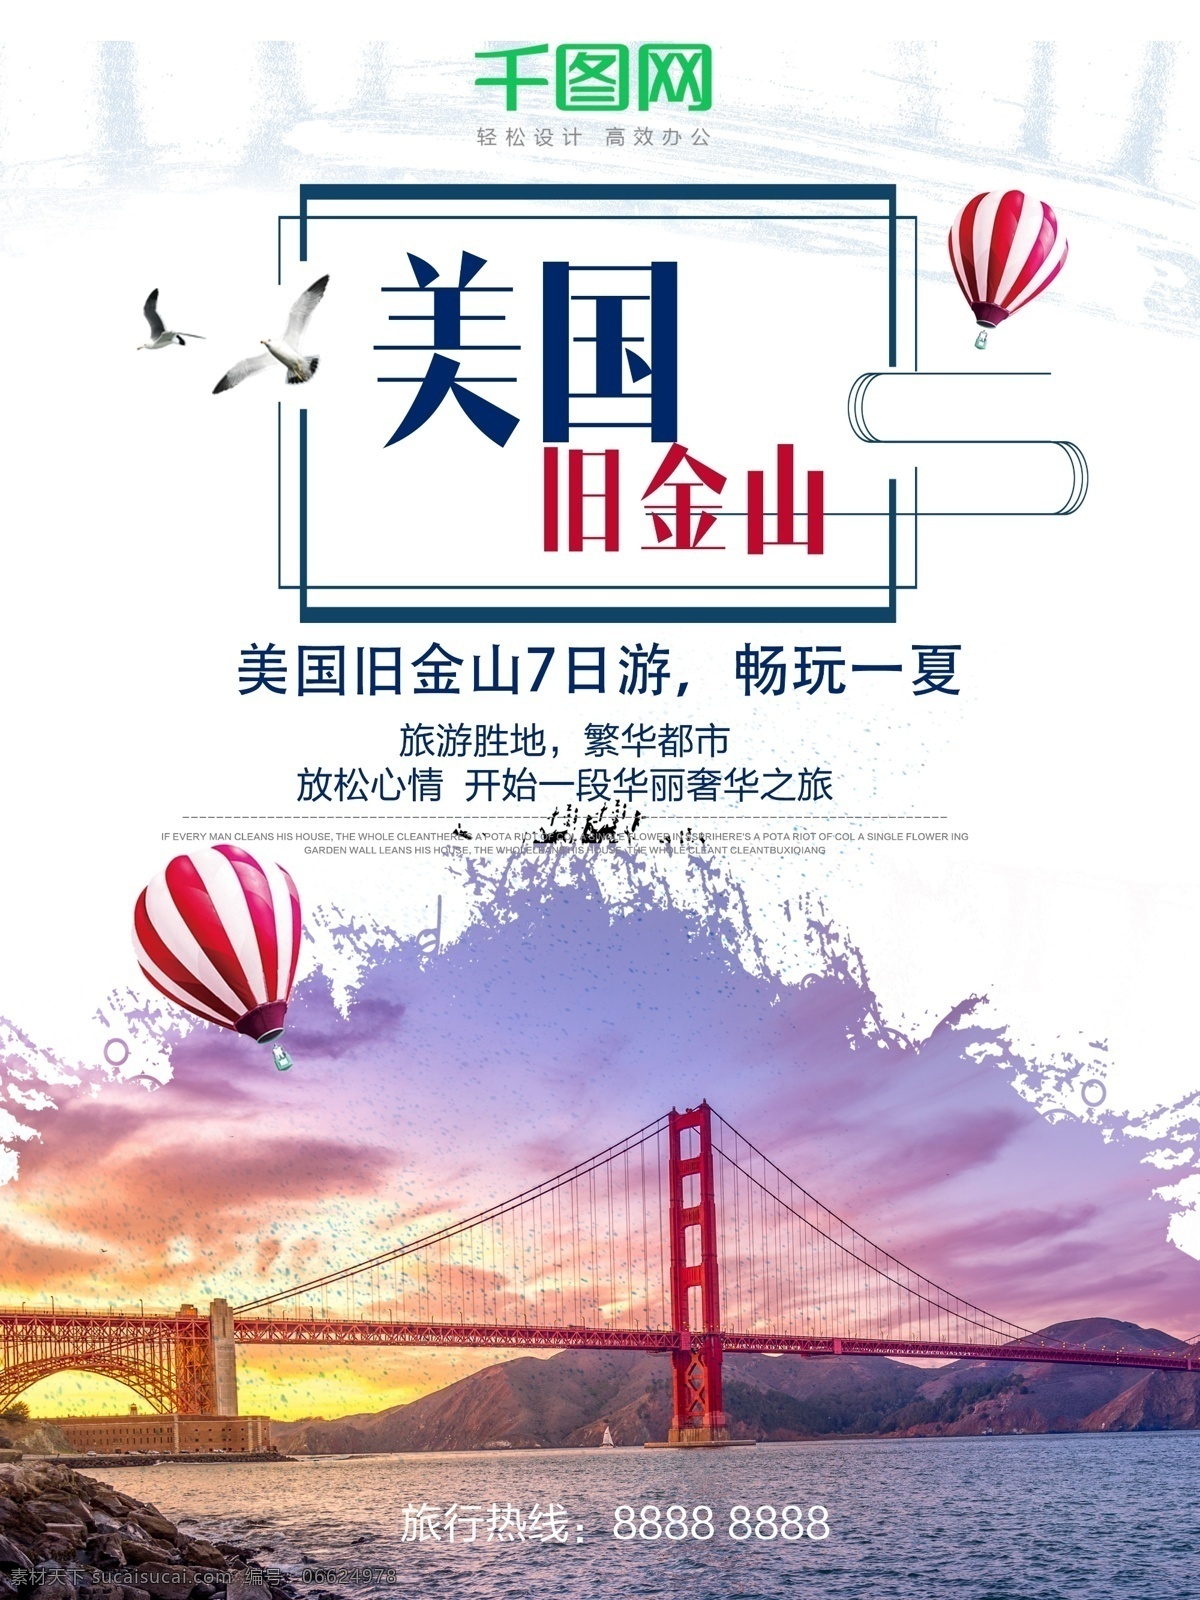 美国 旧金山 旅游 海报 美国旧金山 旅游海报